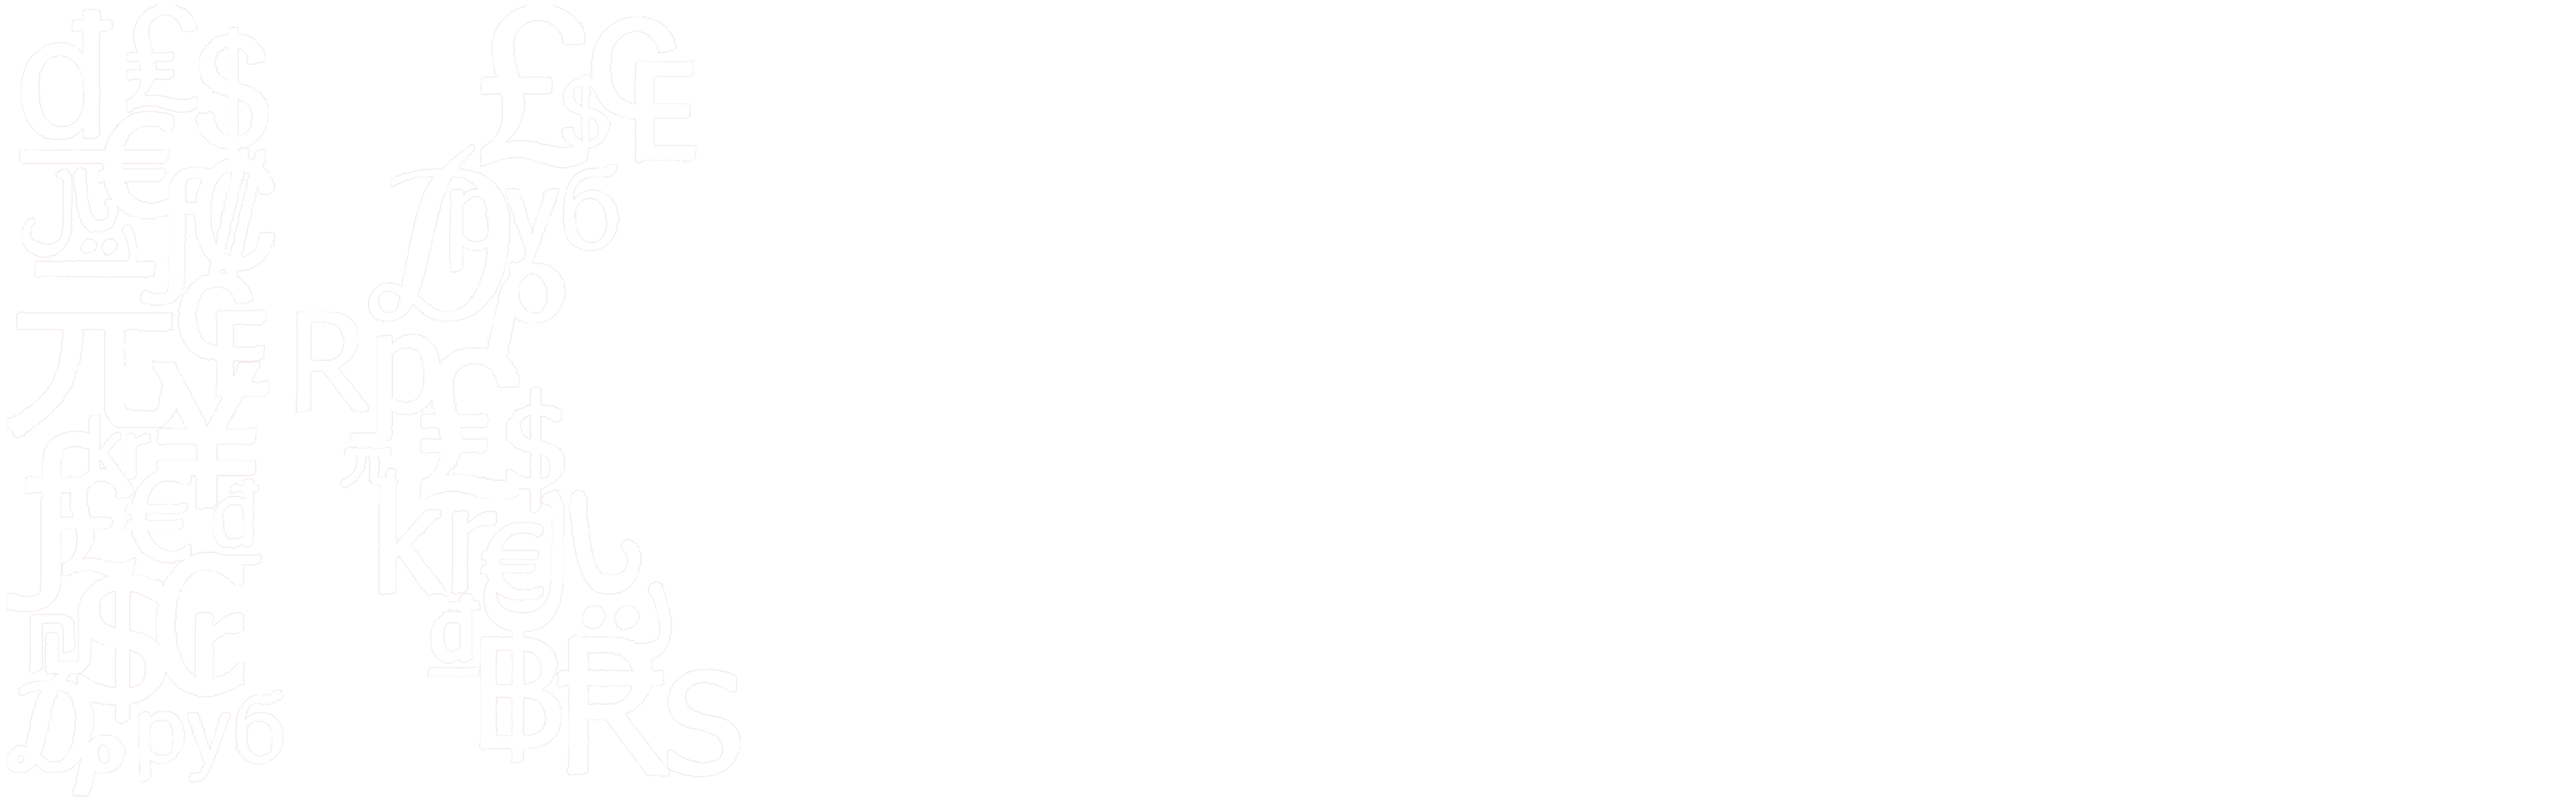 Logo KOMPeK 26 FEB UI